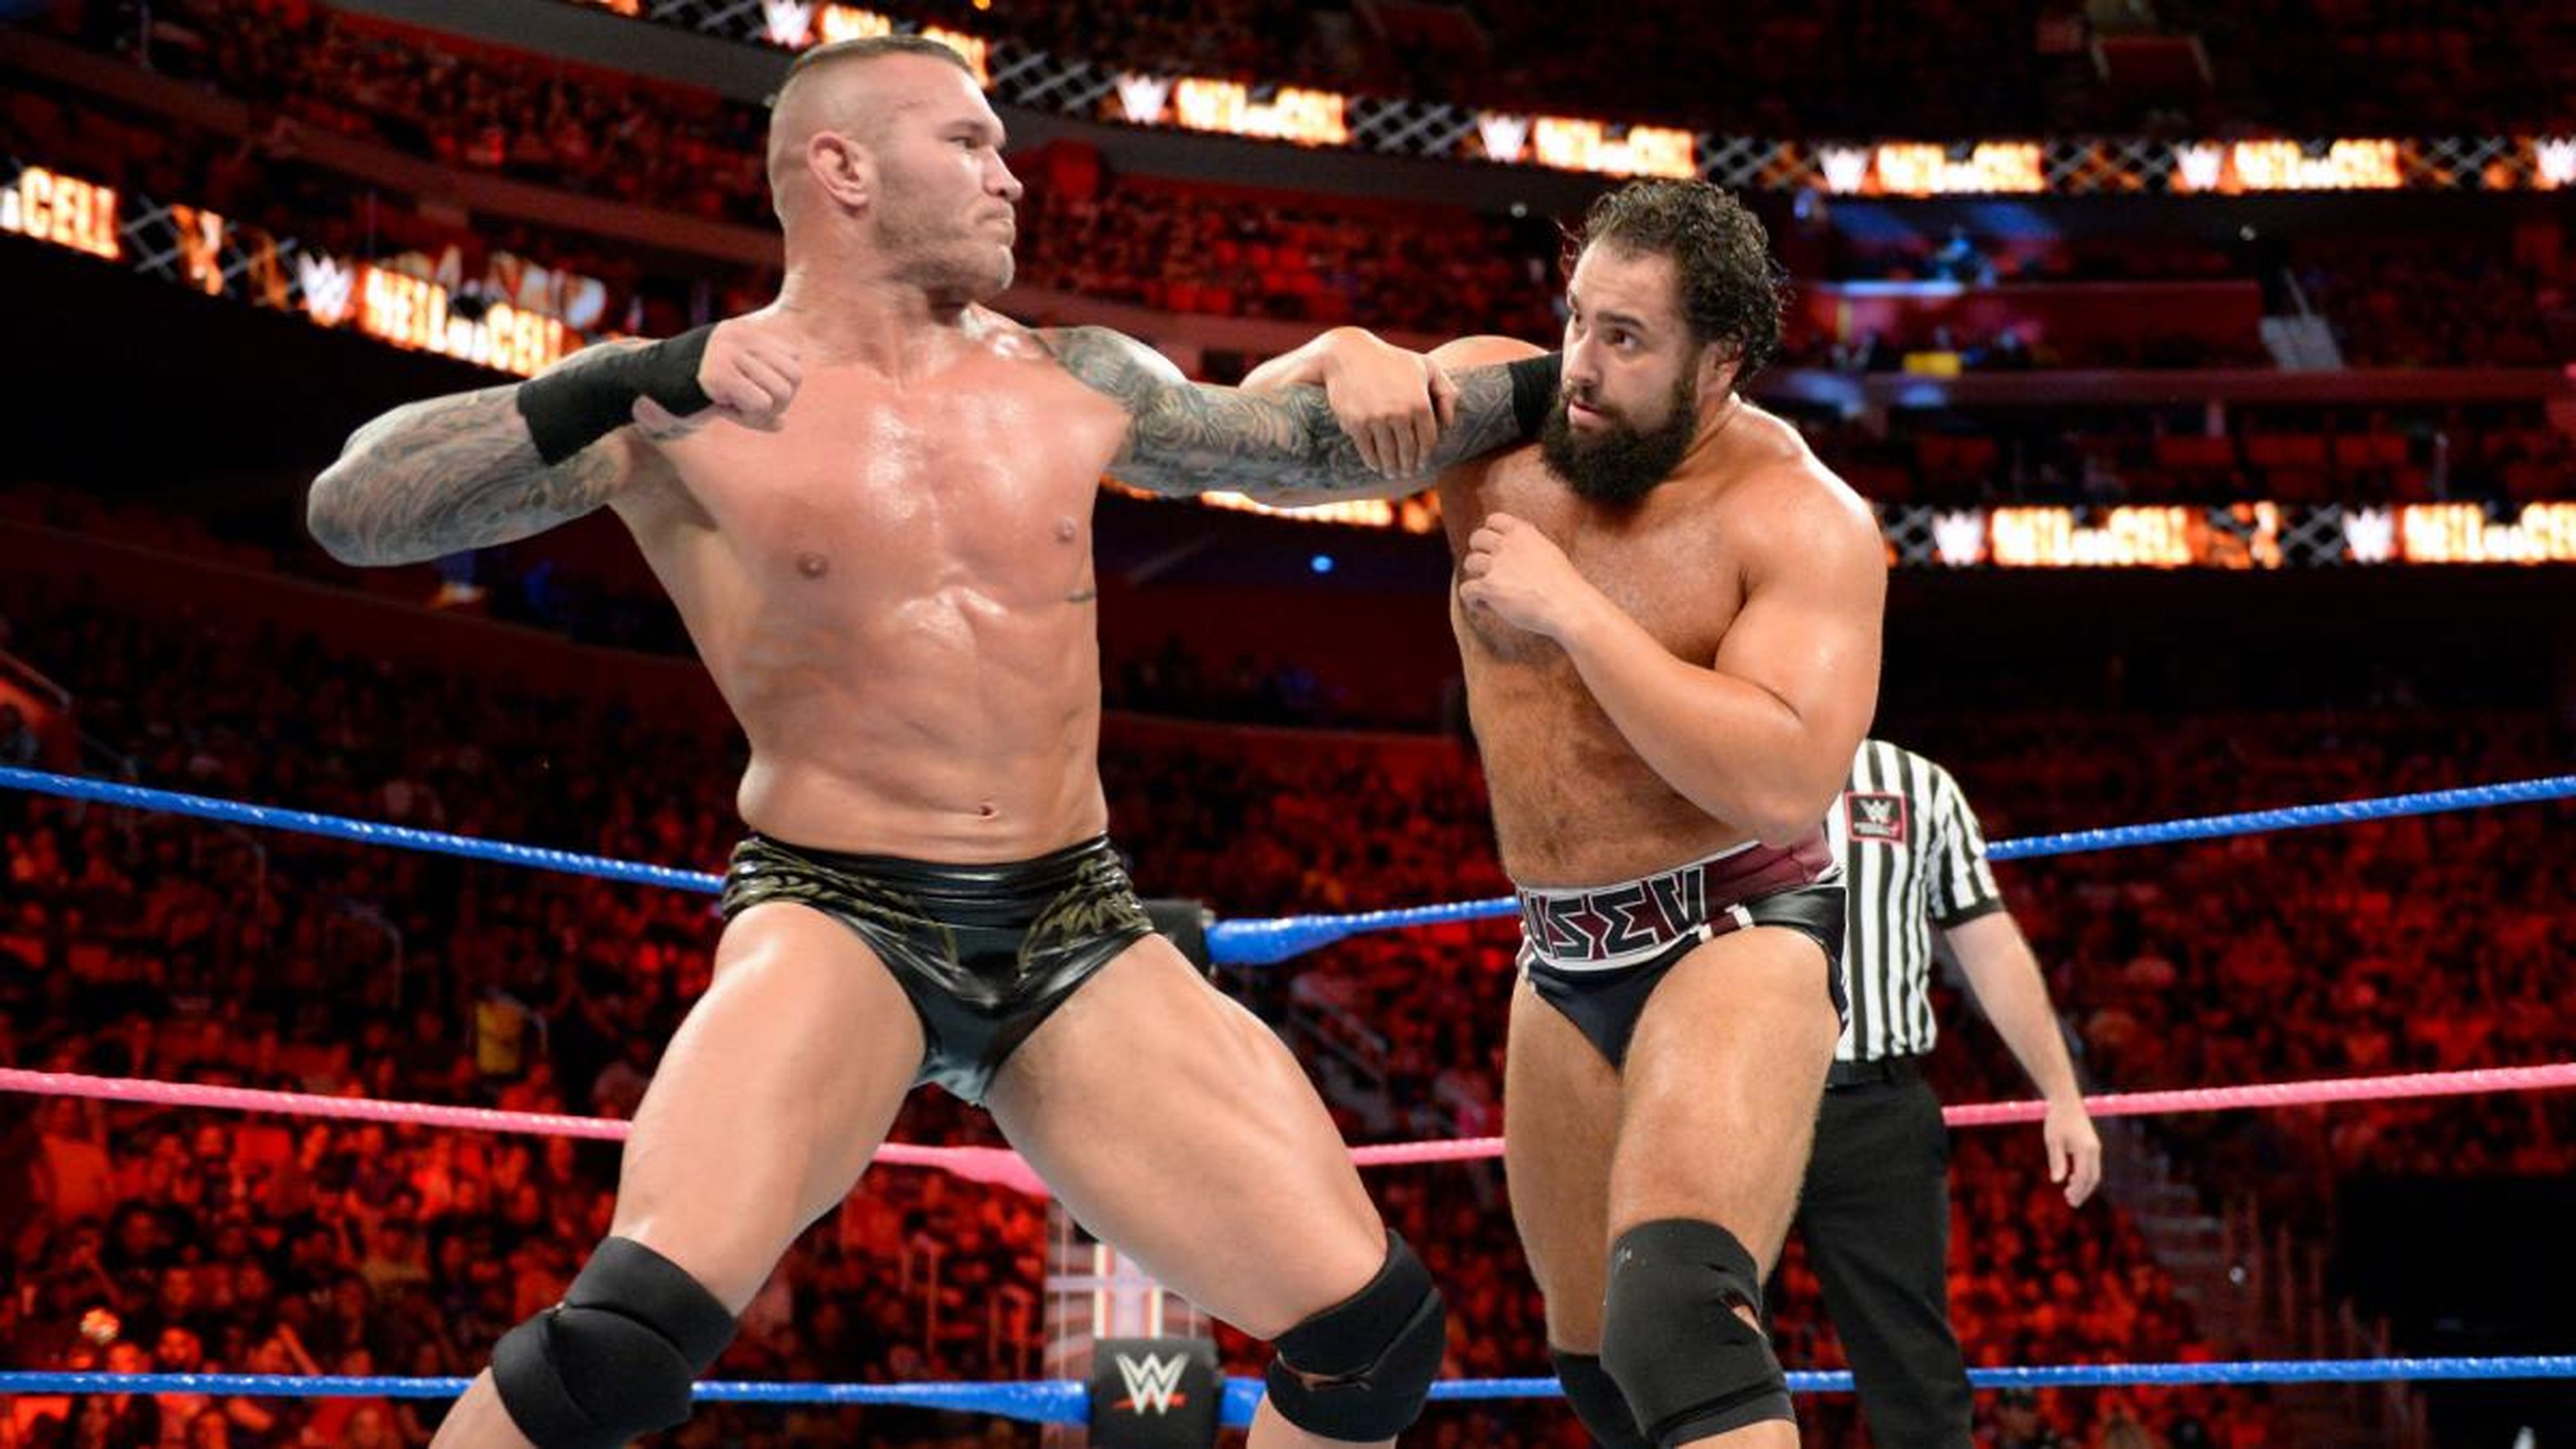 WWe Hell in a Cell 2017 - Randy Orton vs. Rusev